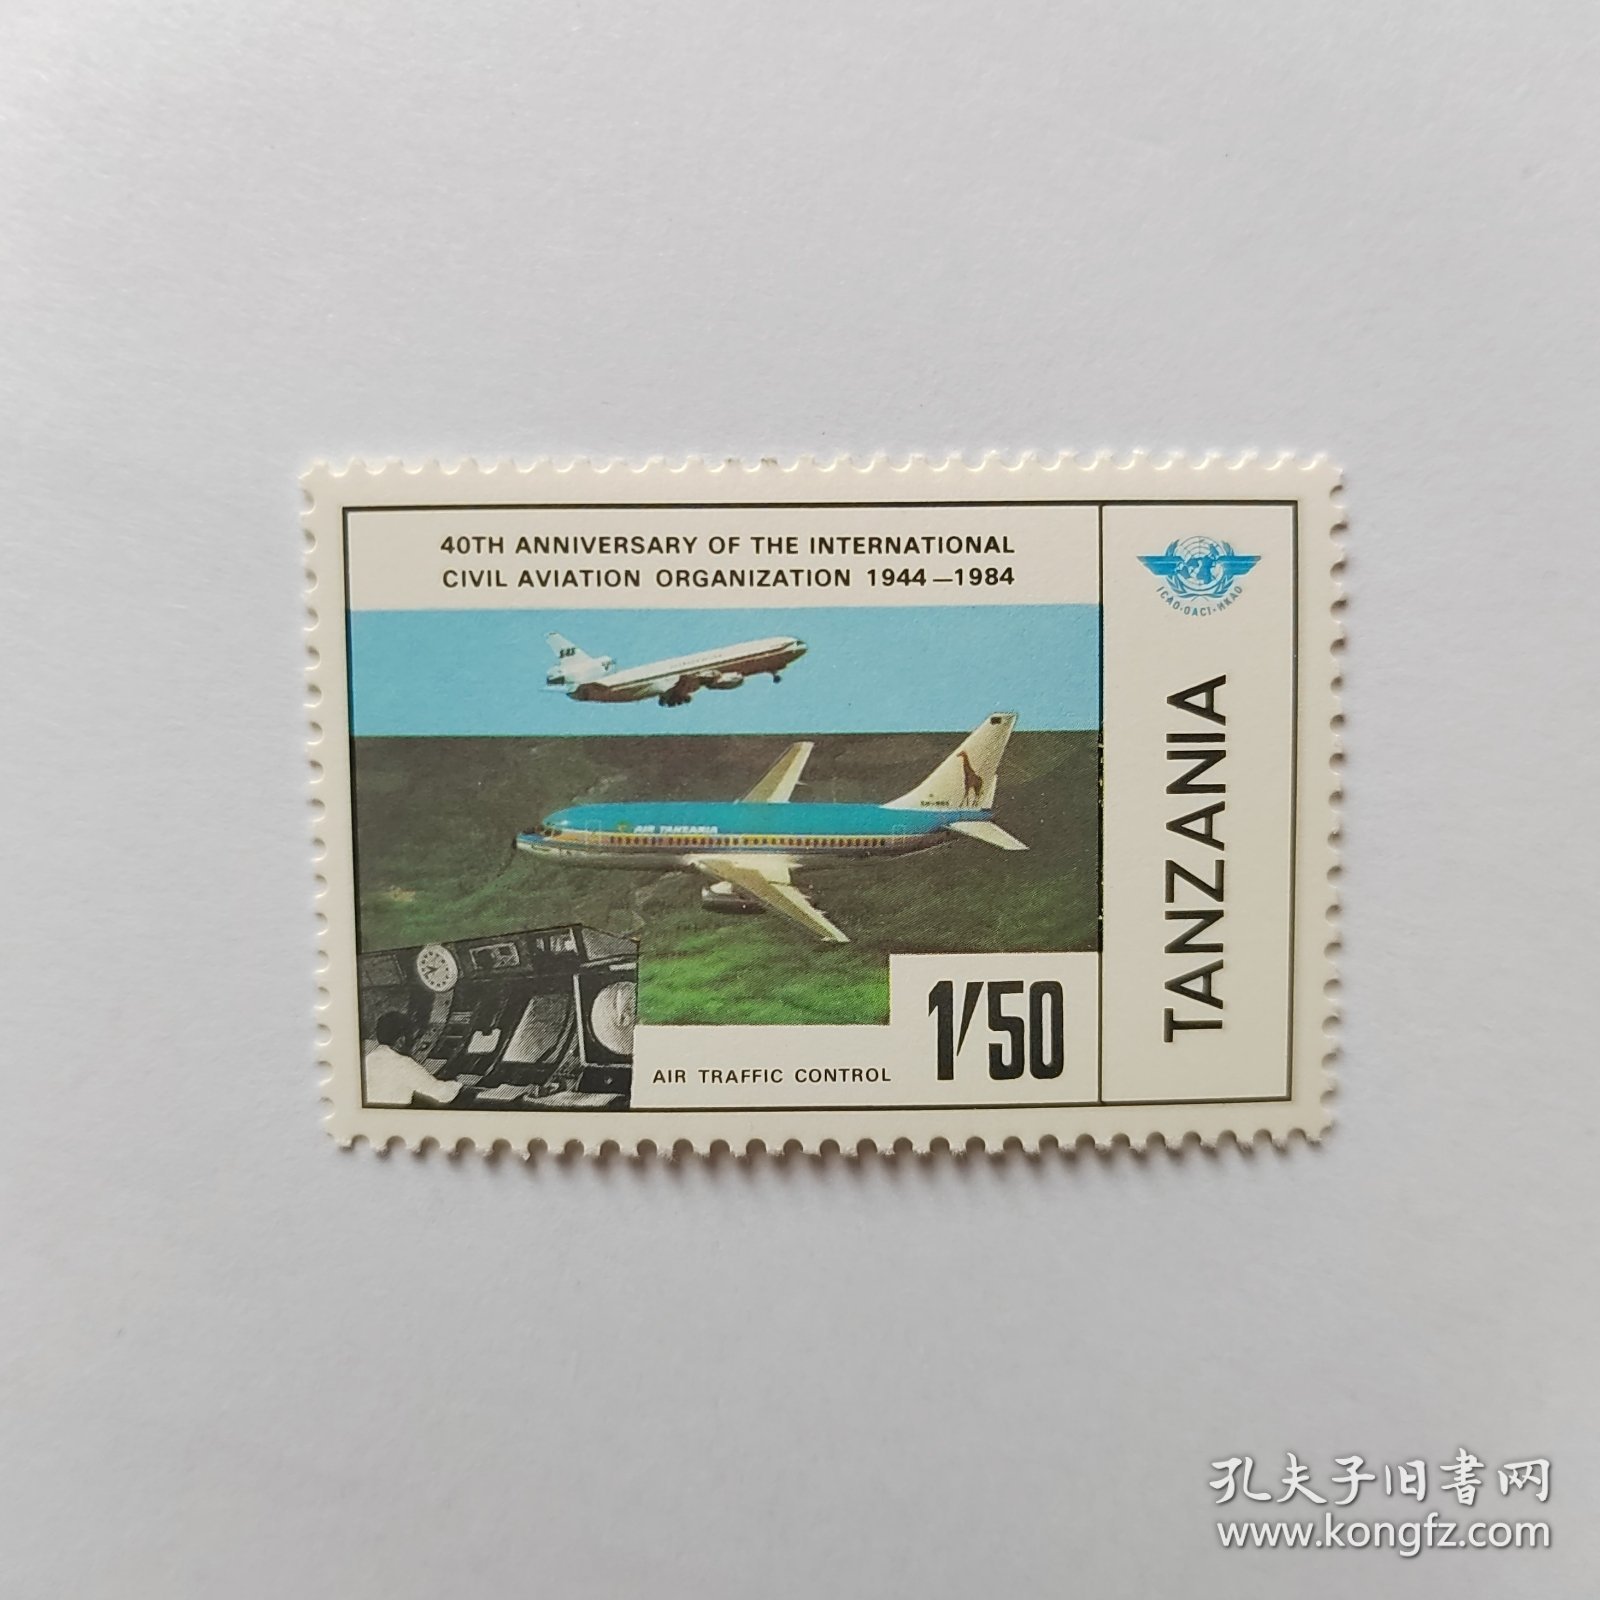 外国邮票 坦桑尼亚邮票1984年国际民航组织成立纪念飞机图案 新票1枚 如图